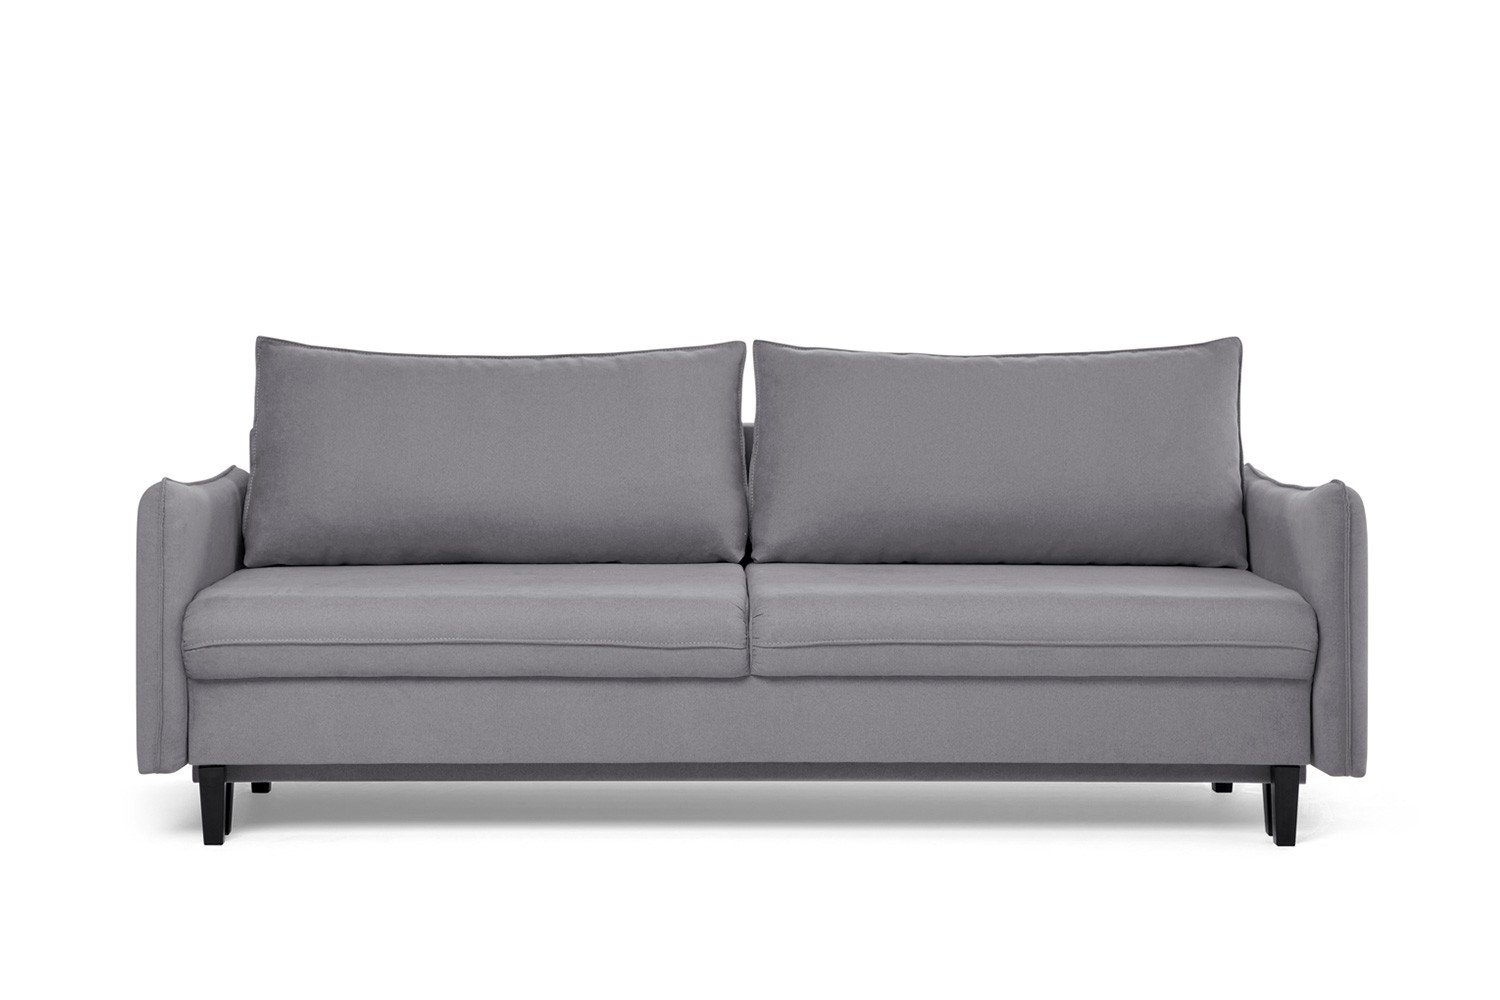 Изабель 365 диван-кровать 3тт 743 серый